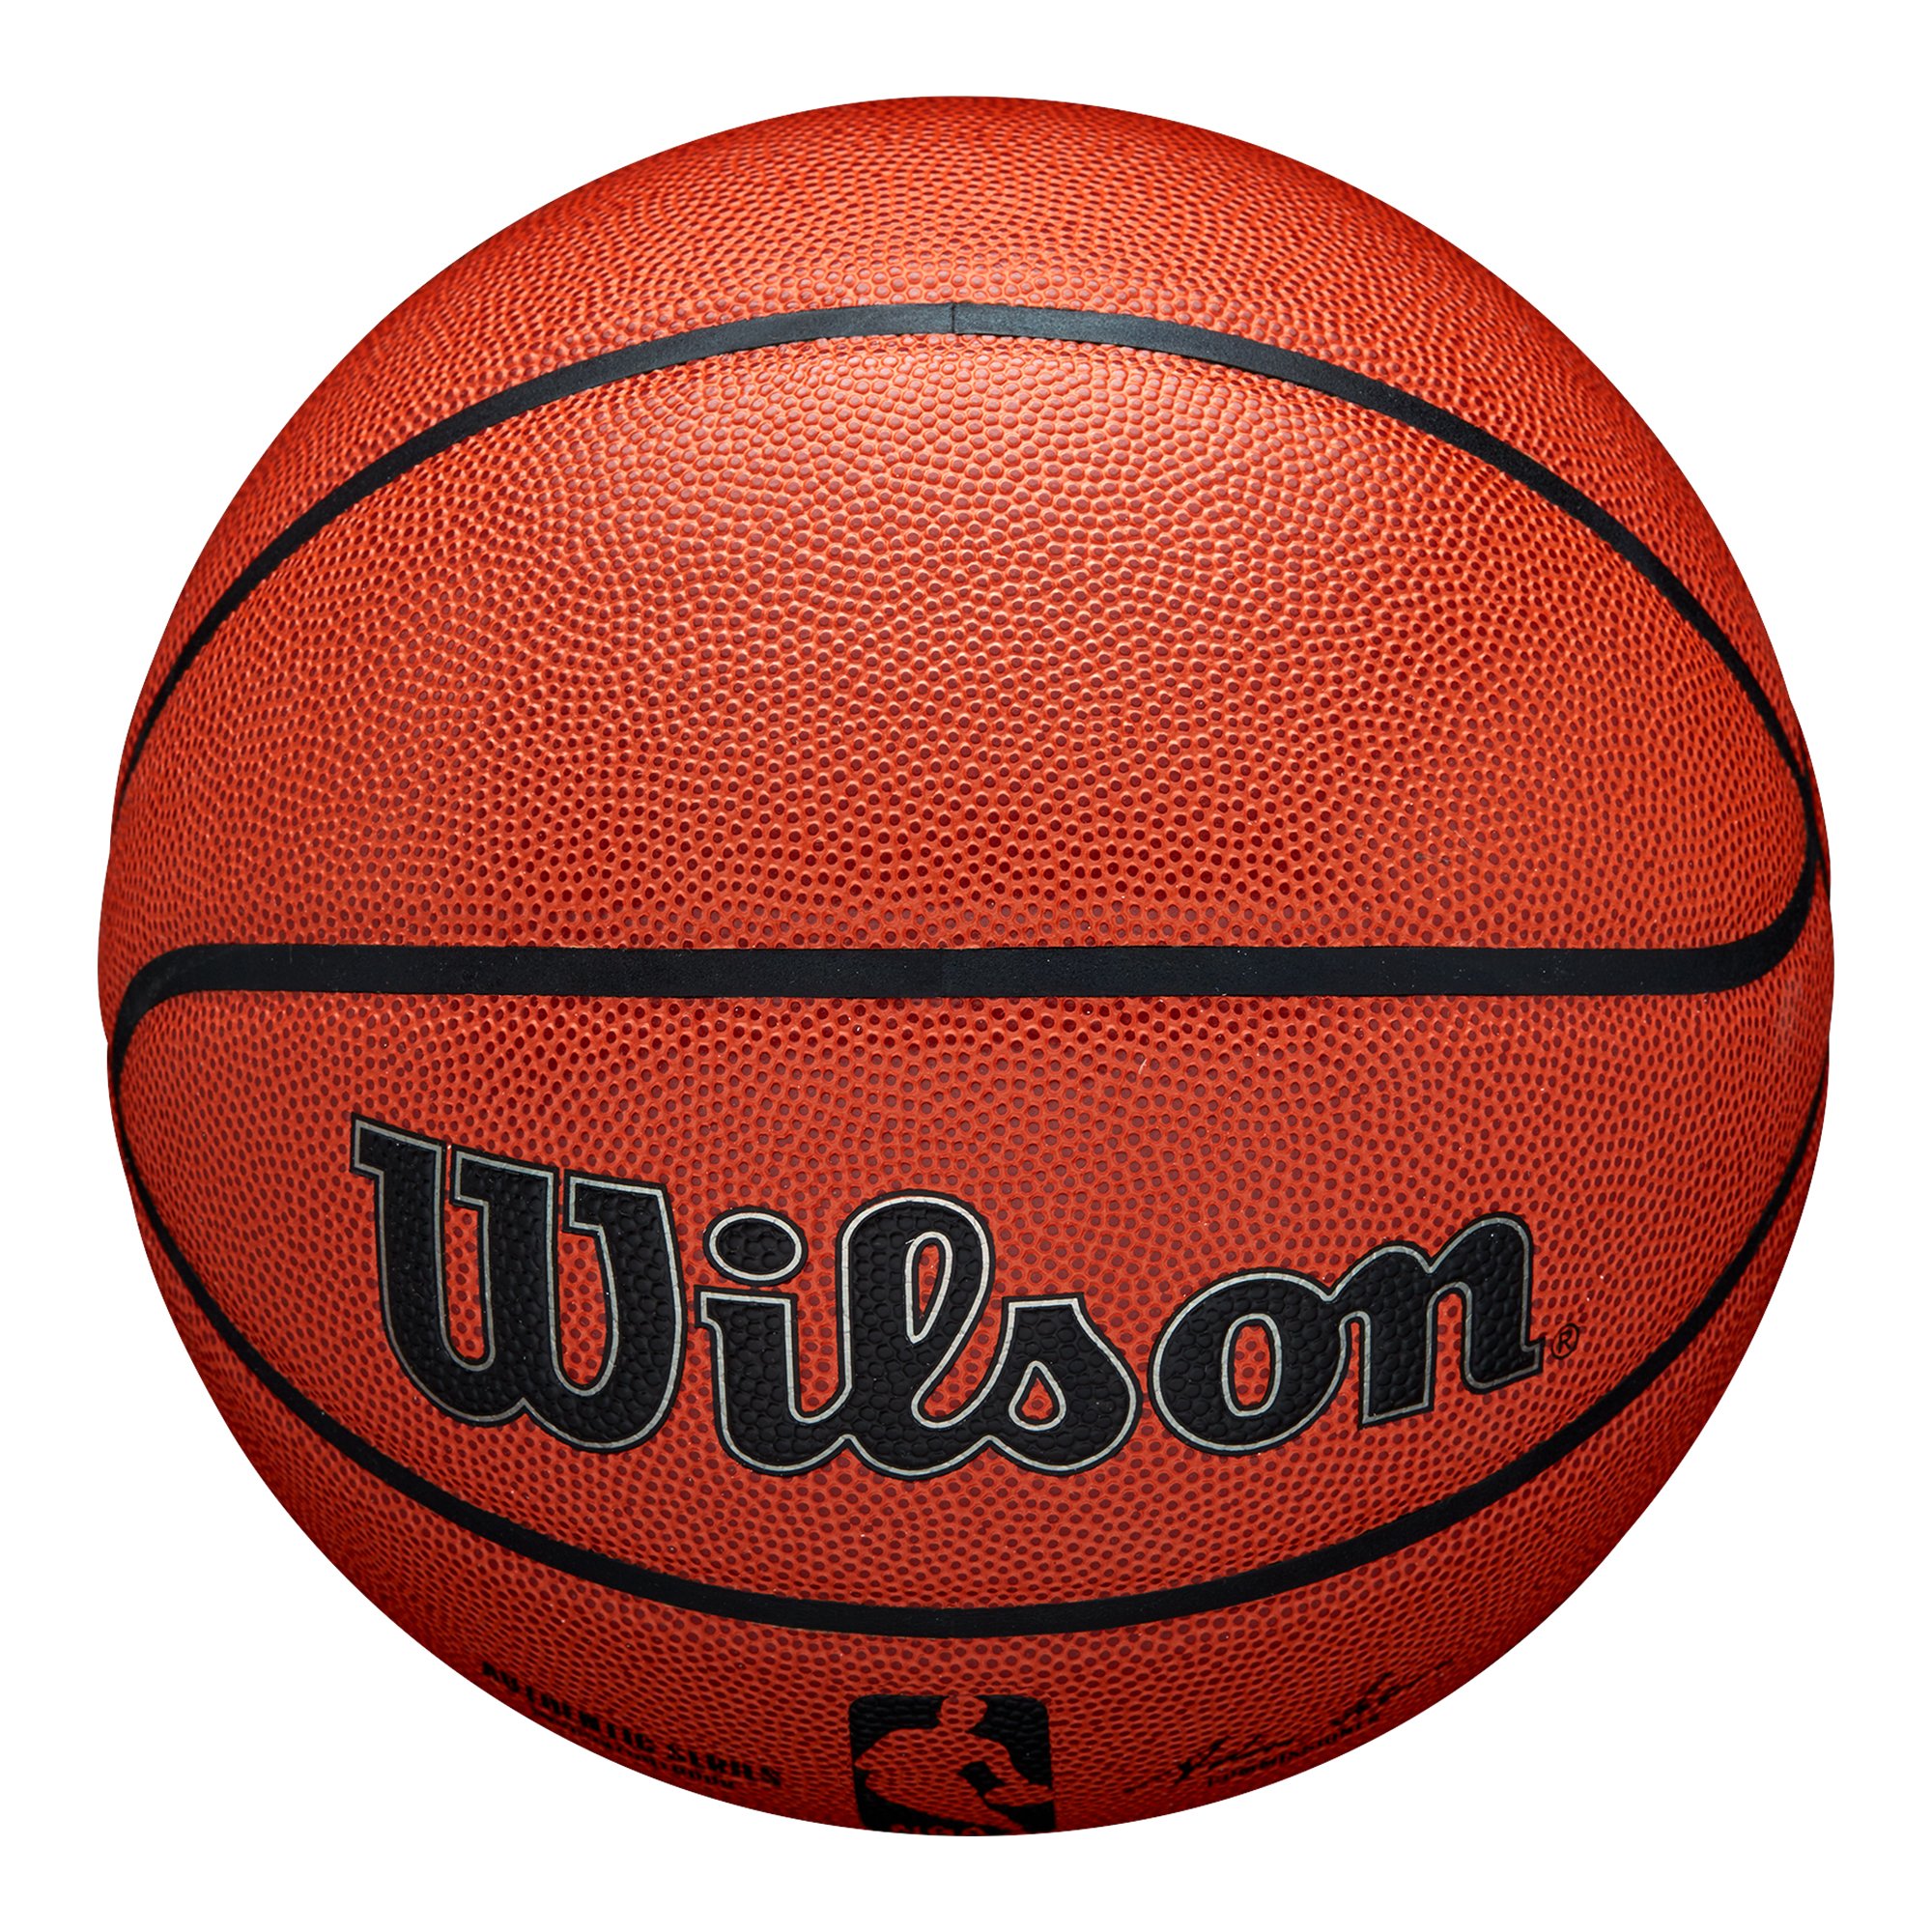 Wilson NBA Authentic Indoor Outdoor Basketball